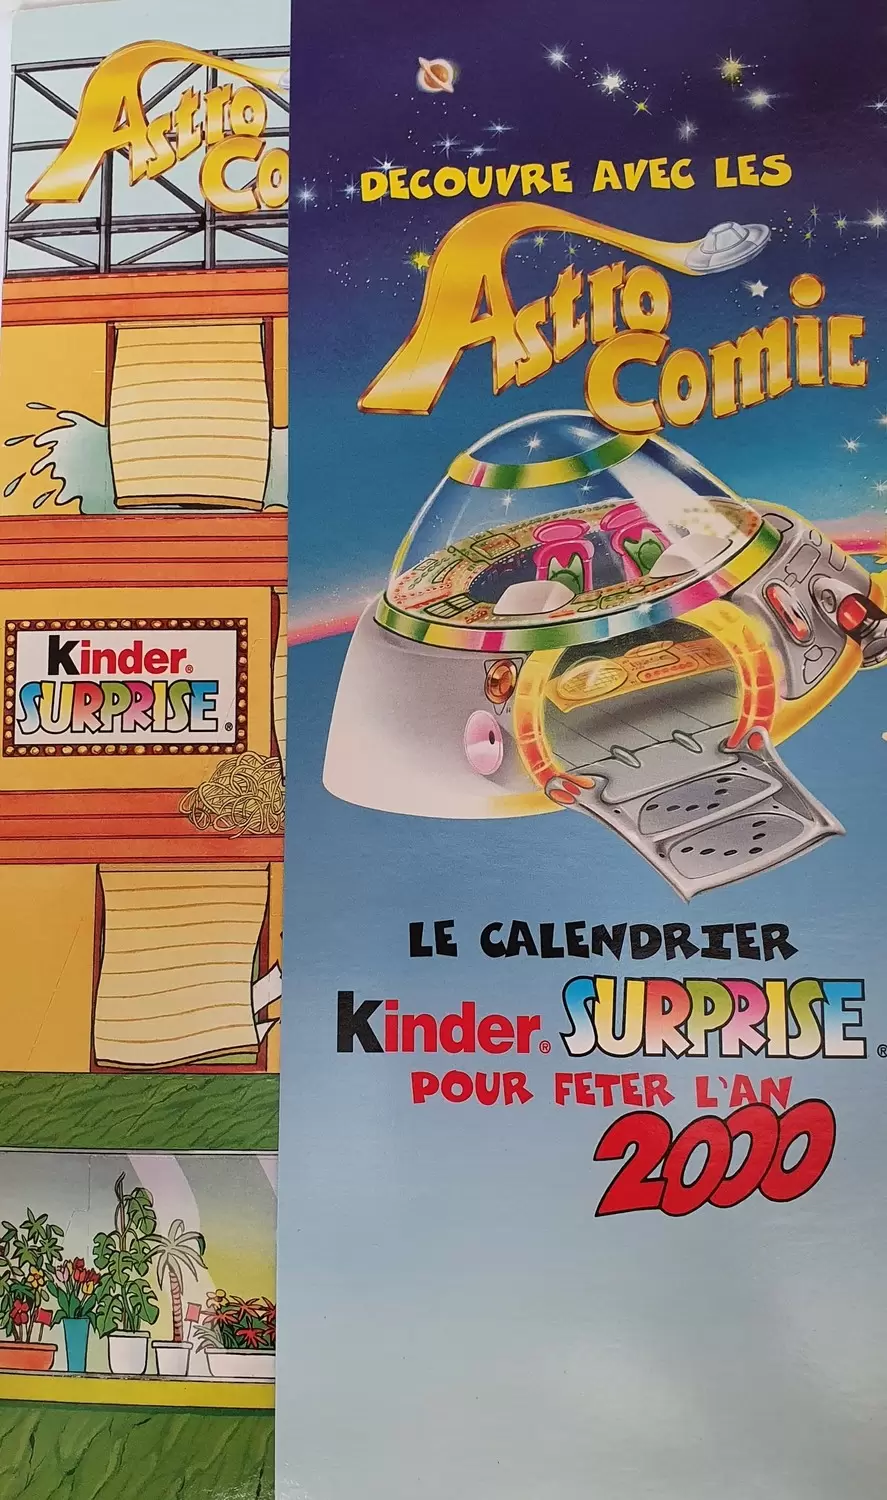 Les Astro Comic - DIORAMA CALENDRIER - ASTRO COMIC